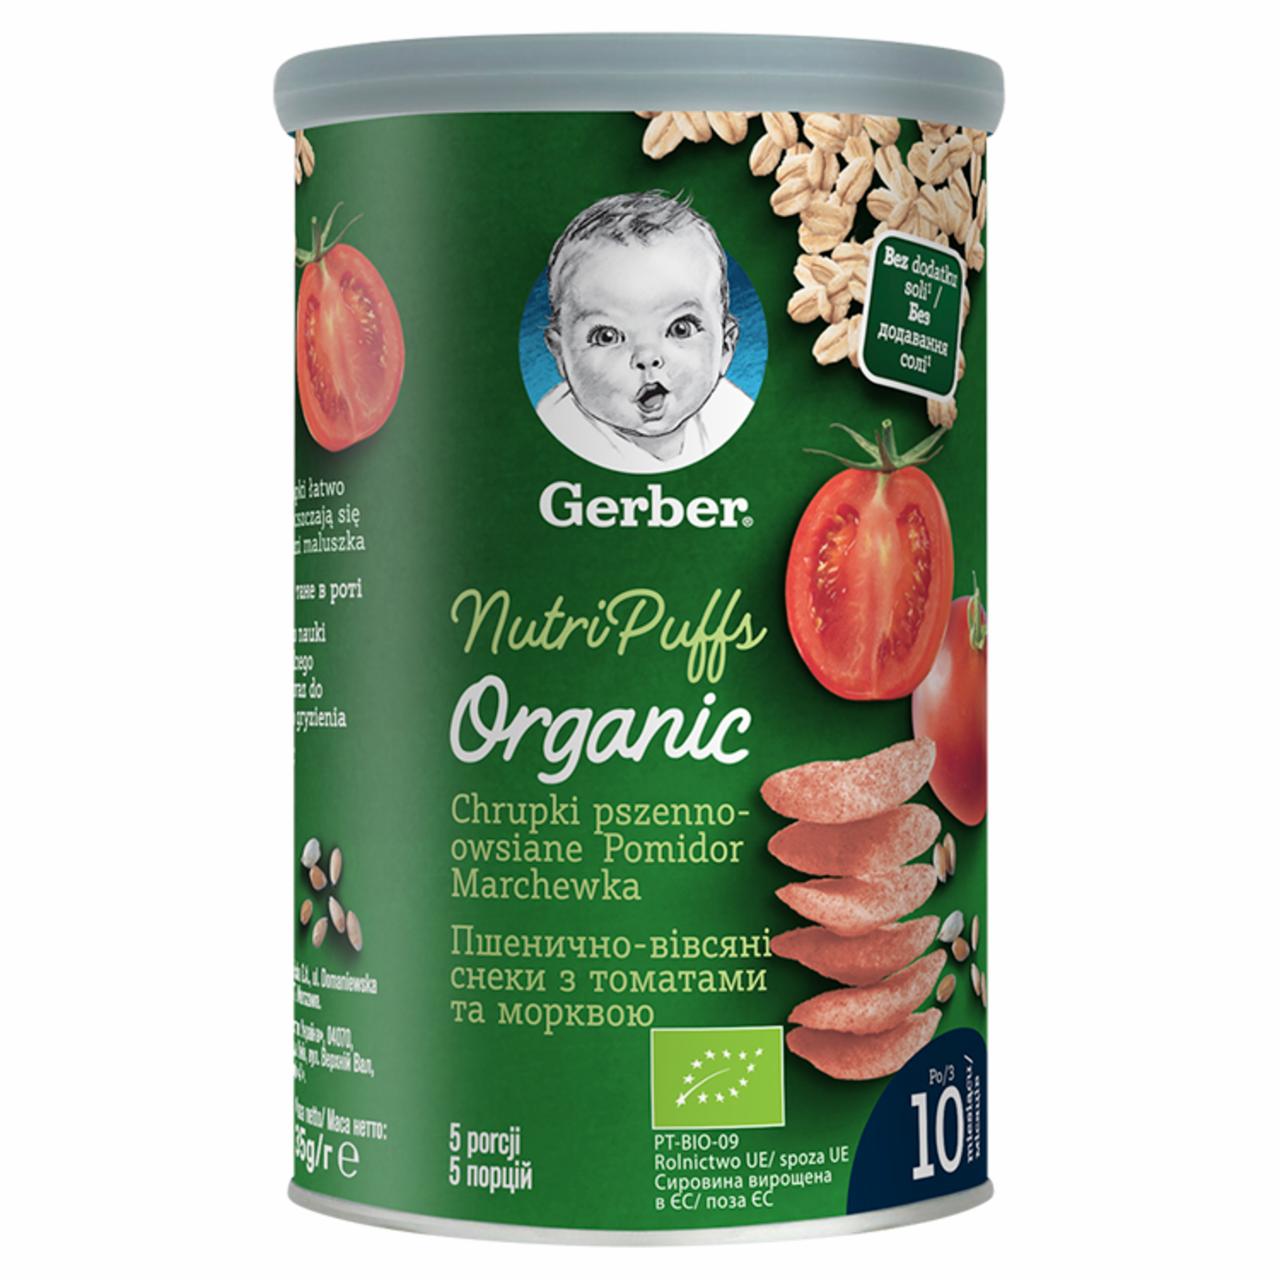 Zdjęcia - Gerber Organic Chrupki pszenno-owsiane pomidor marchewka dla niemowląt od 10. miesiąca 35 g